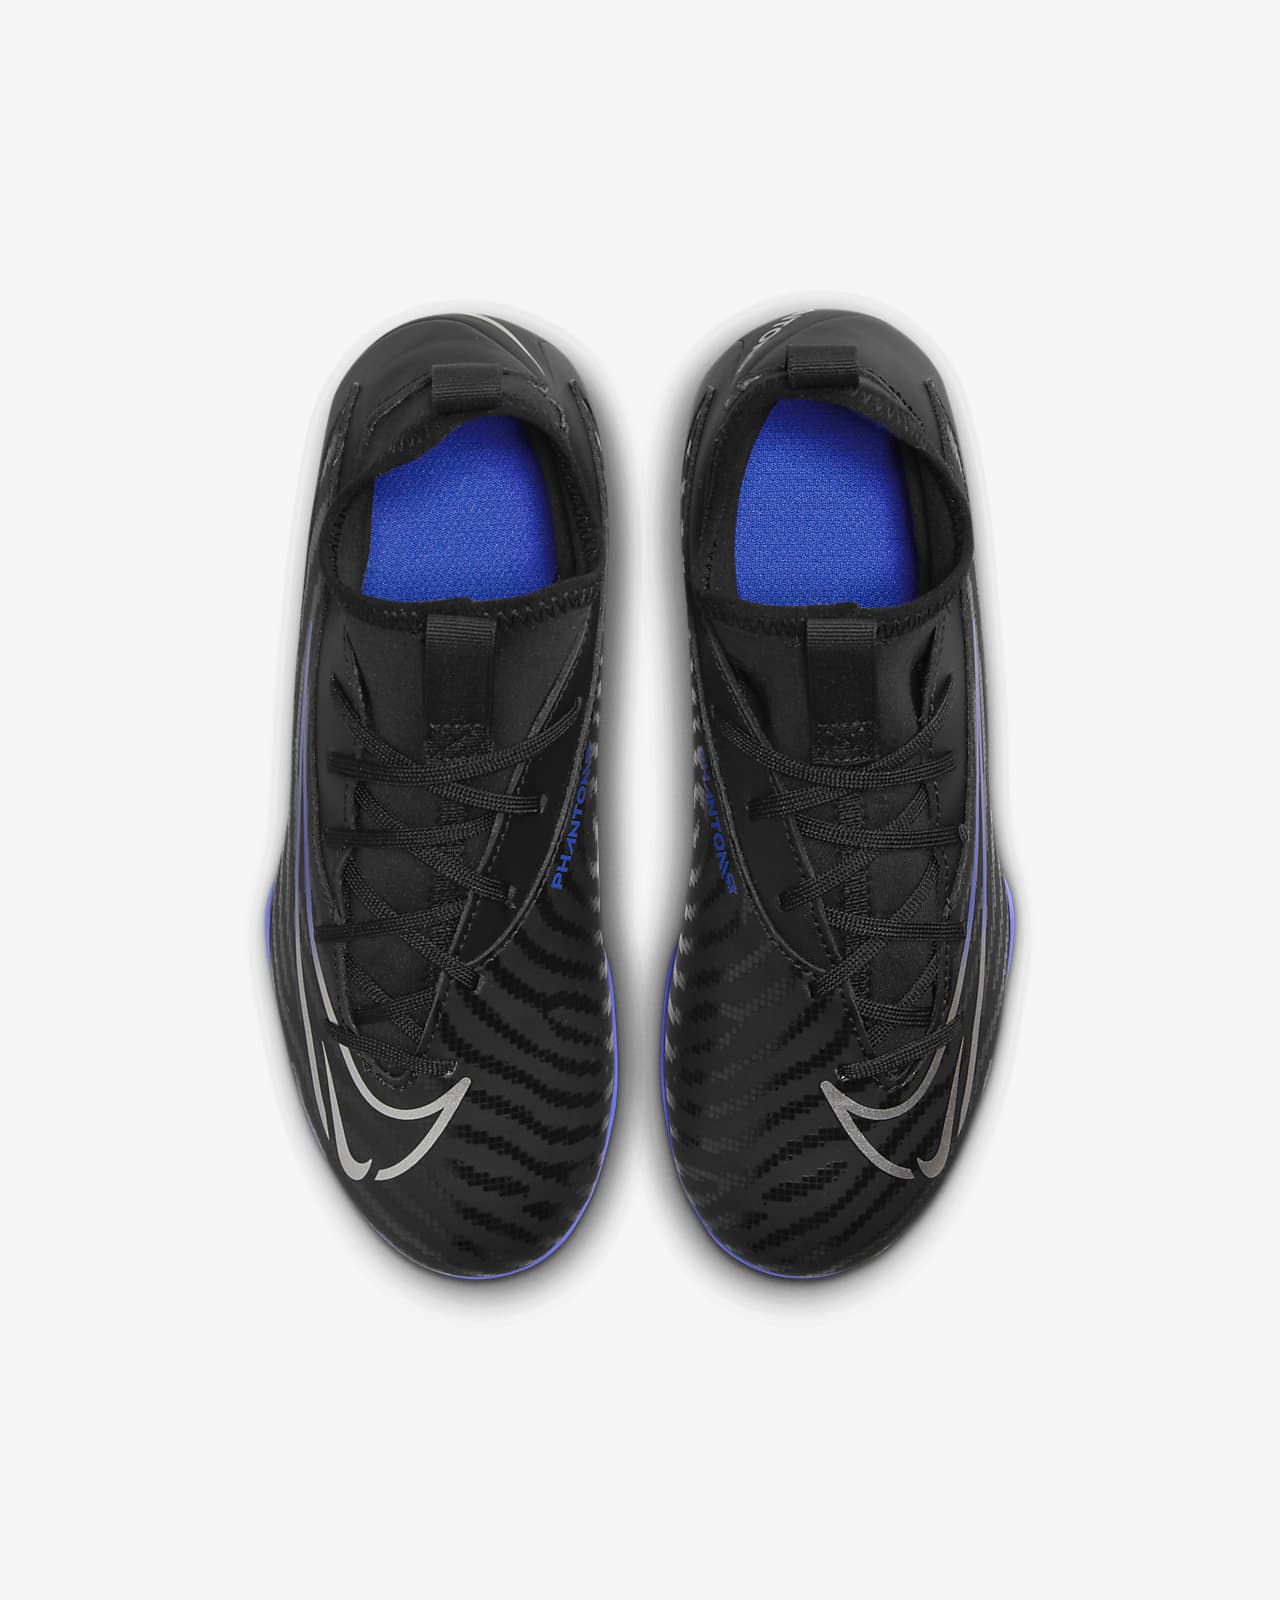 Chaussure de foot montante à crampons multi-surfaces Nike Jr